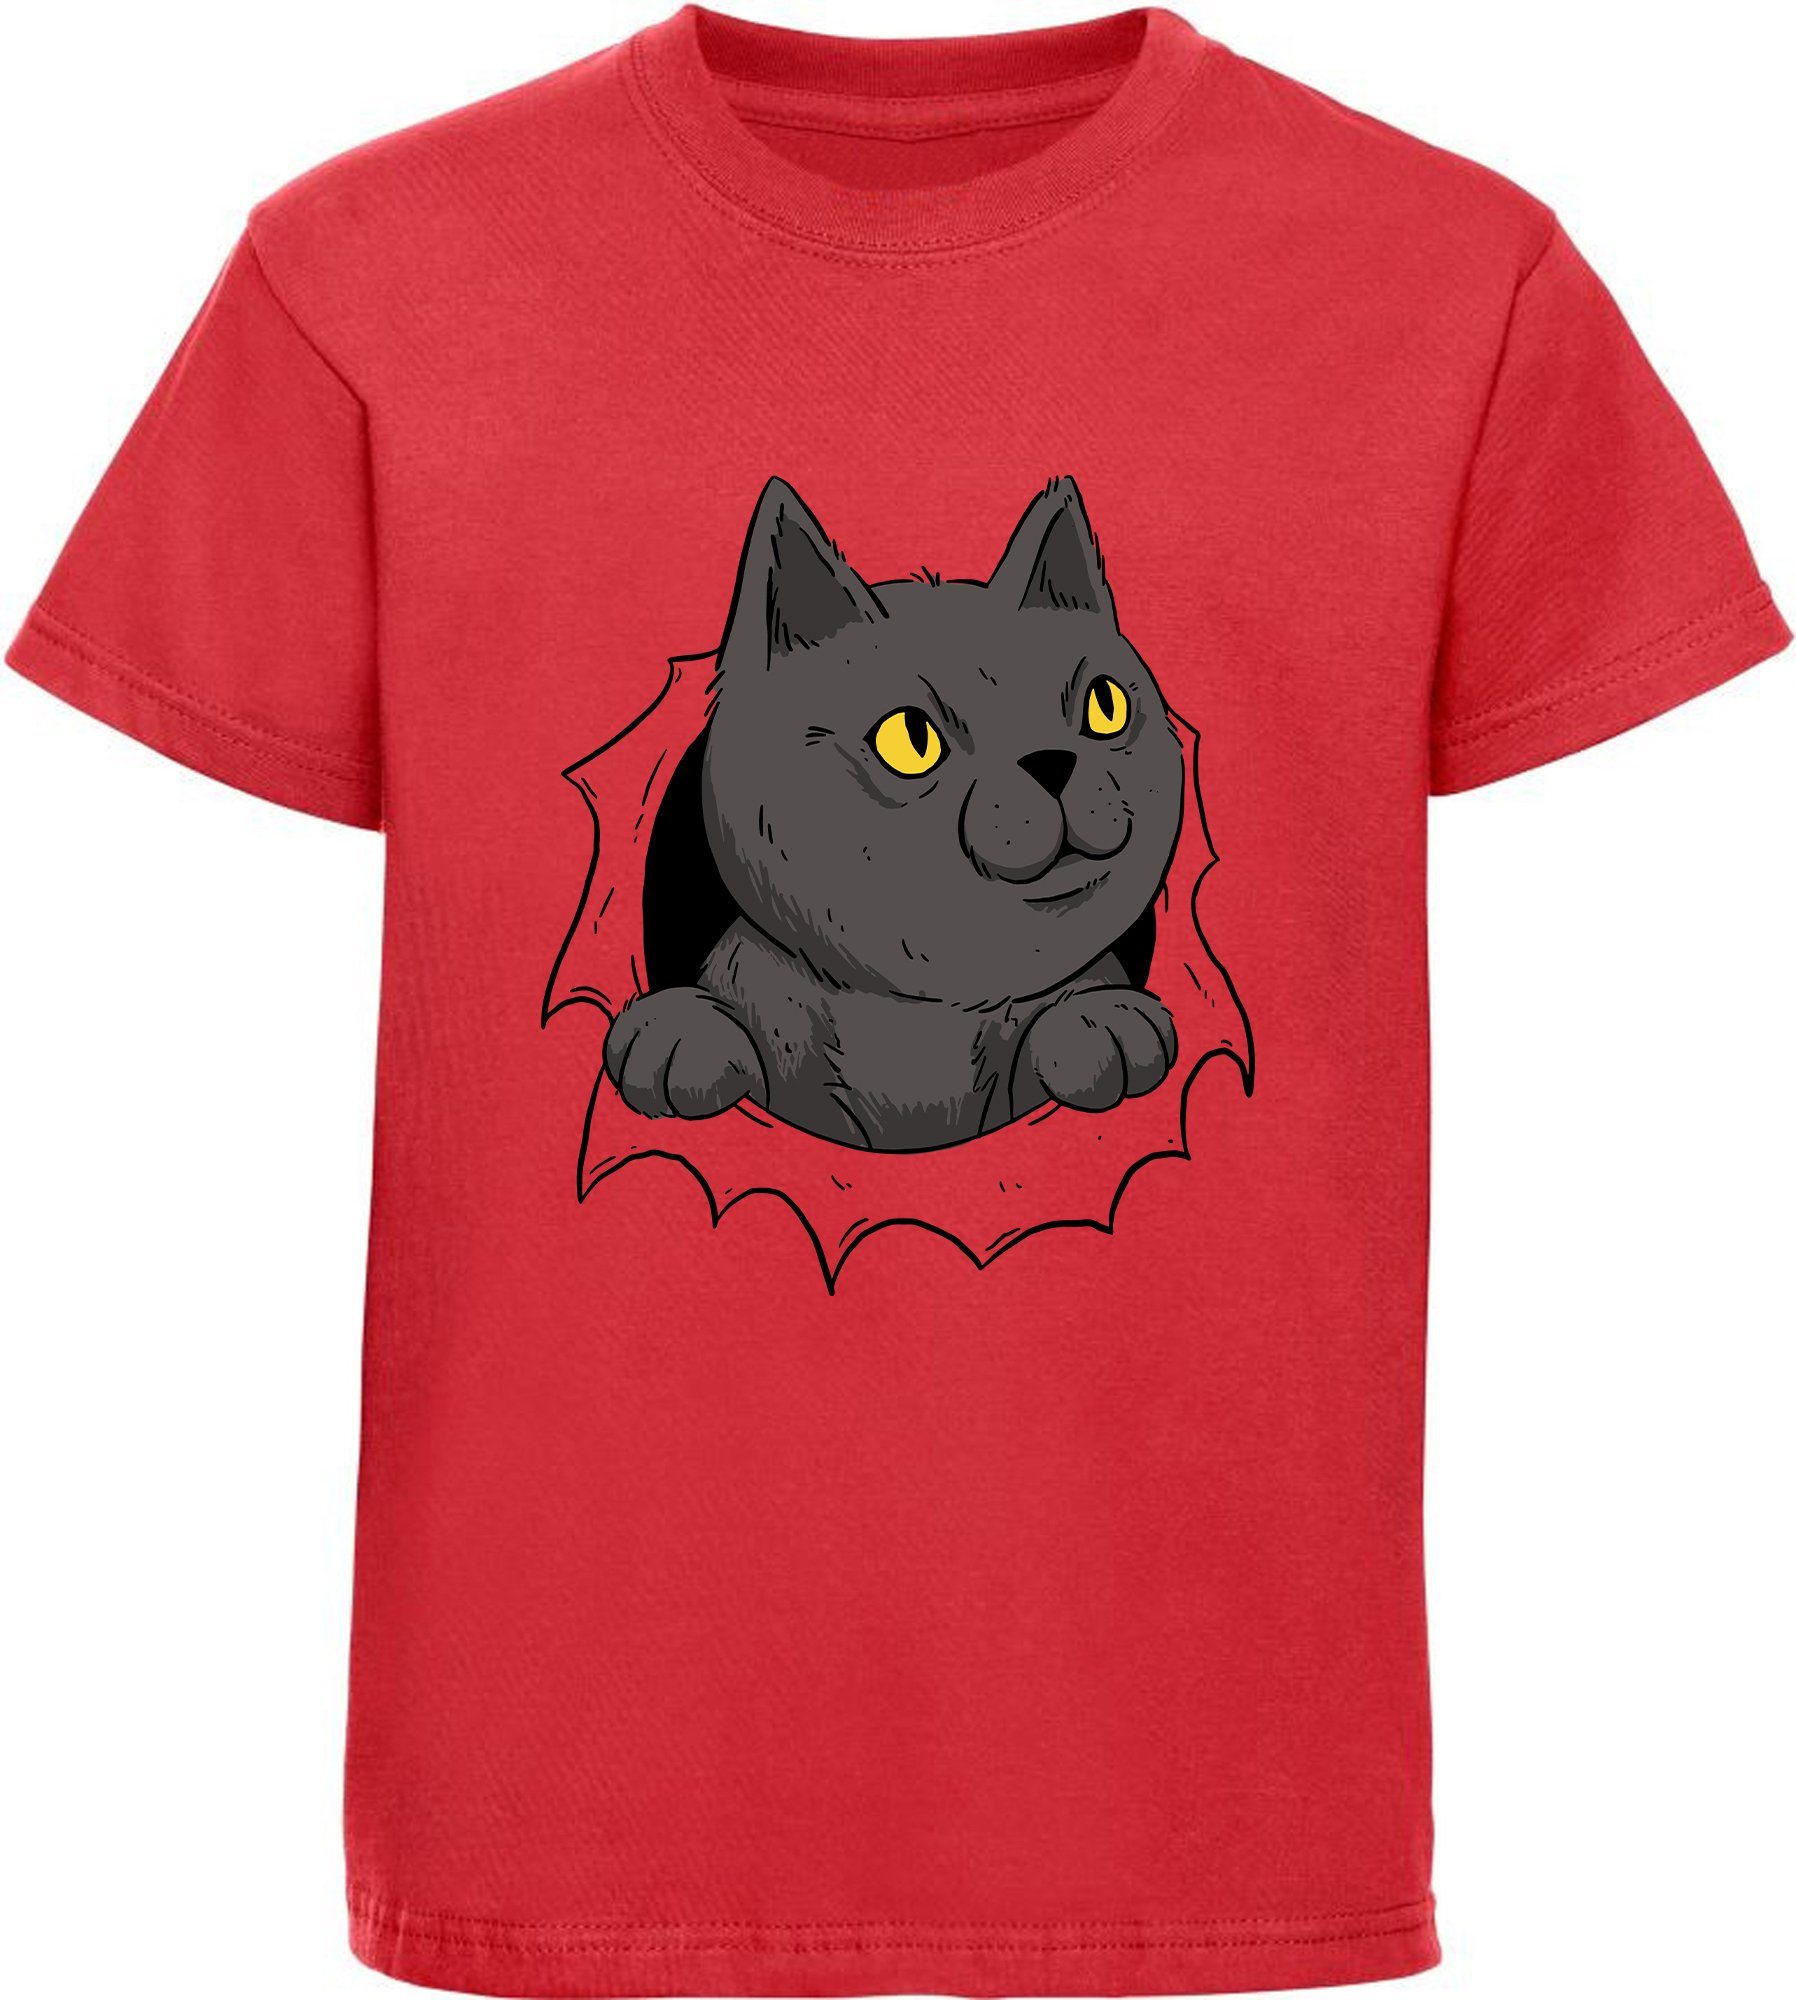 MyDesign24 Print-Shirt bedrucktes Kinder Mädchen T-Shirt Katze die aus einem Loch kommt Baumwollshirt mit Katze, weiß, schwarz, rot, rosa, i105 | T-Shirts